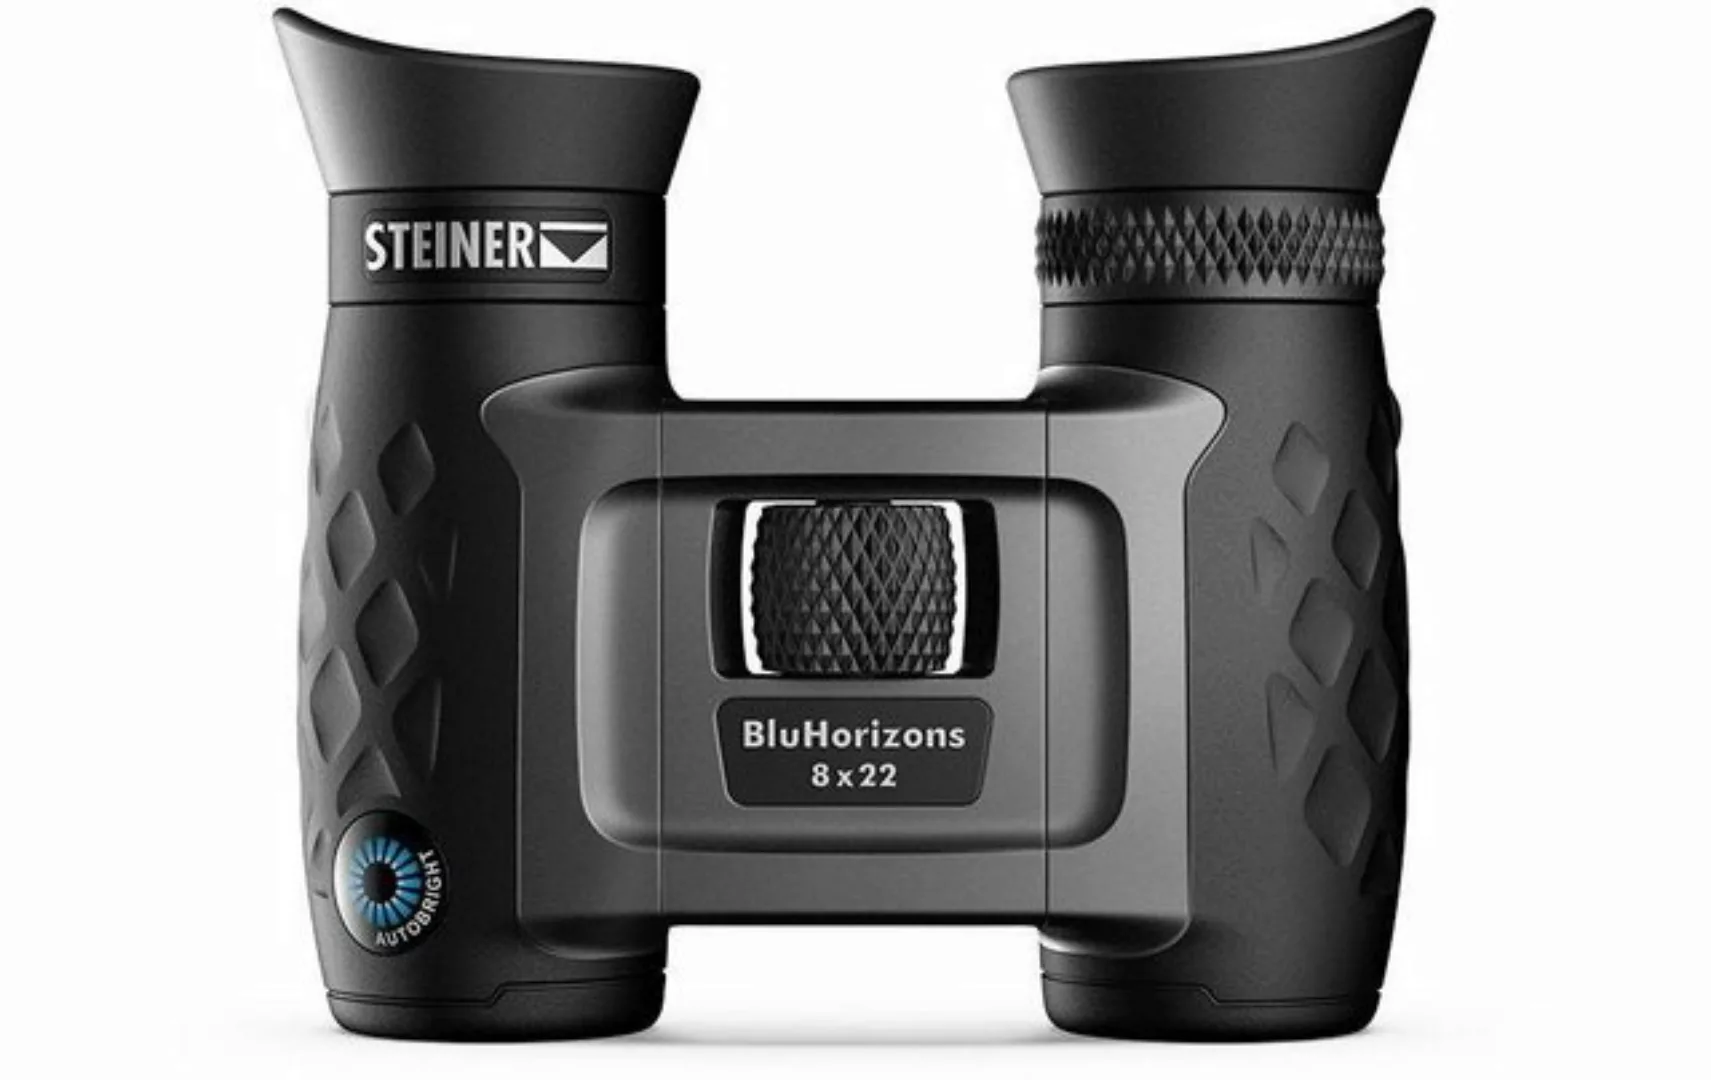 Steiner BluHorizons 8x22 Fernglas günstig online kaufen